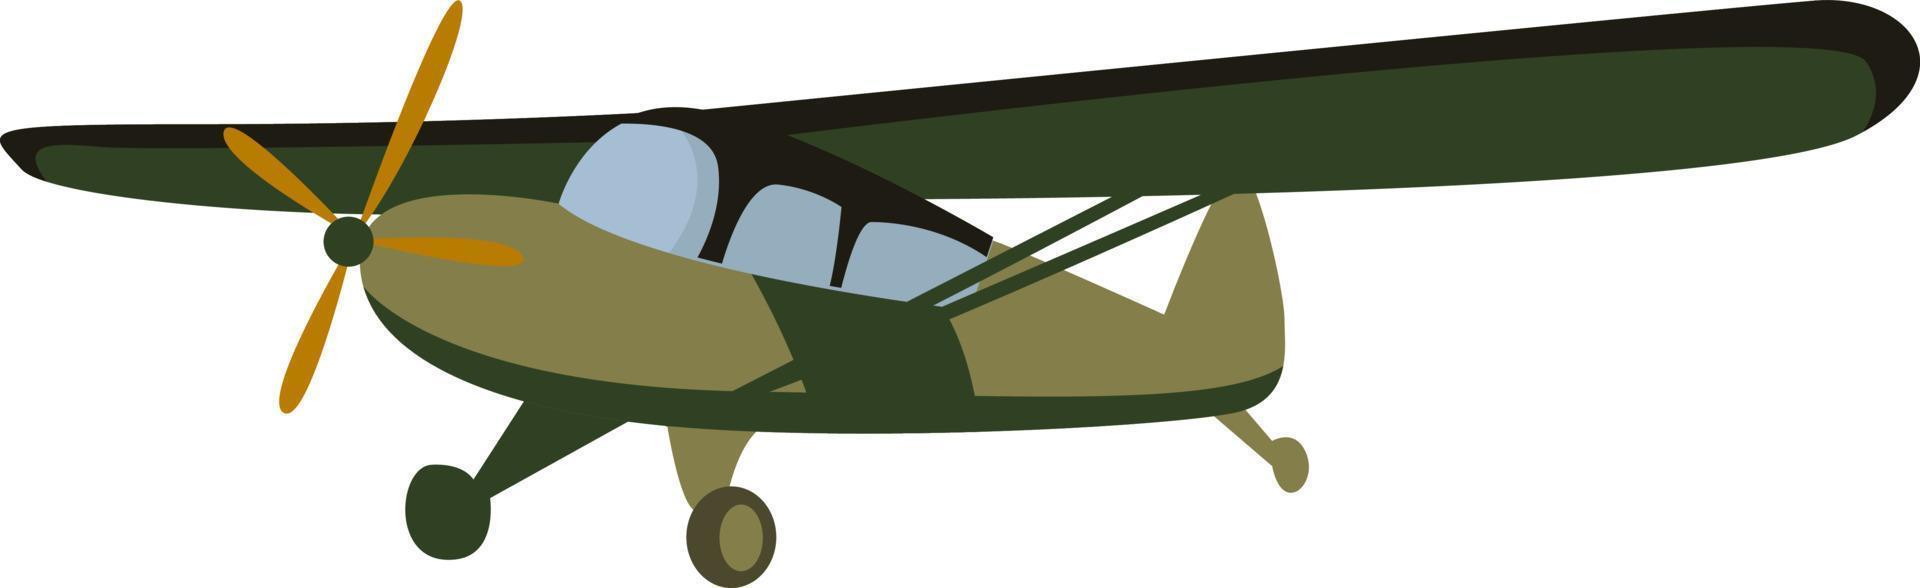 Verbindungsflugzeug, Illustration, Vektor auf weißem Hintergrund